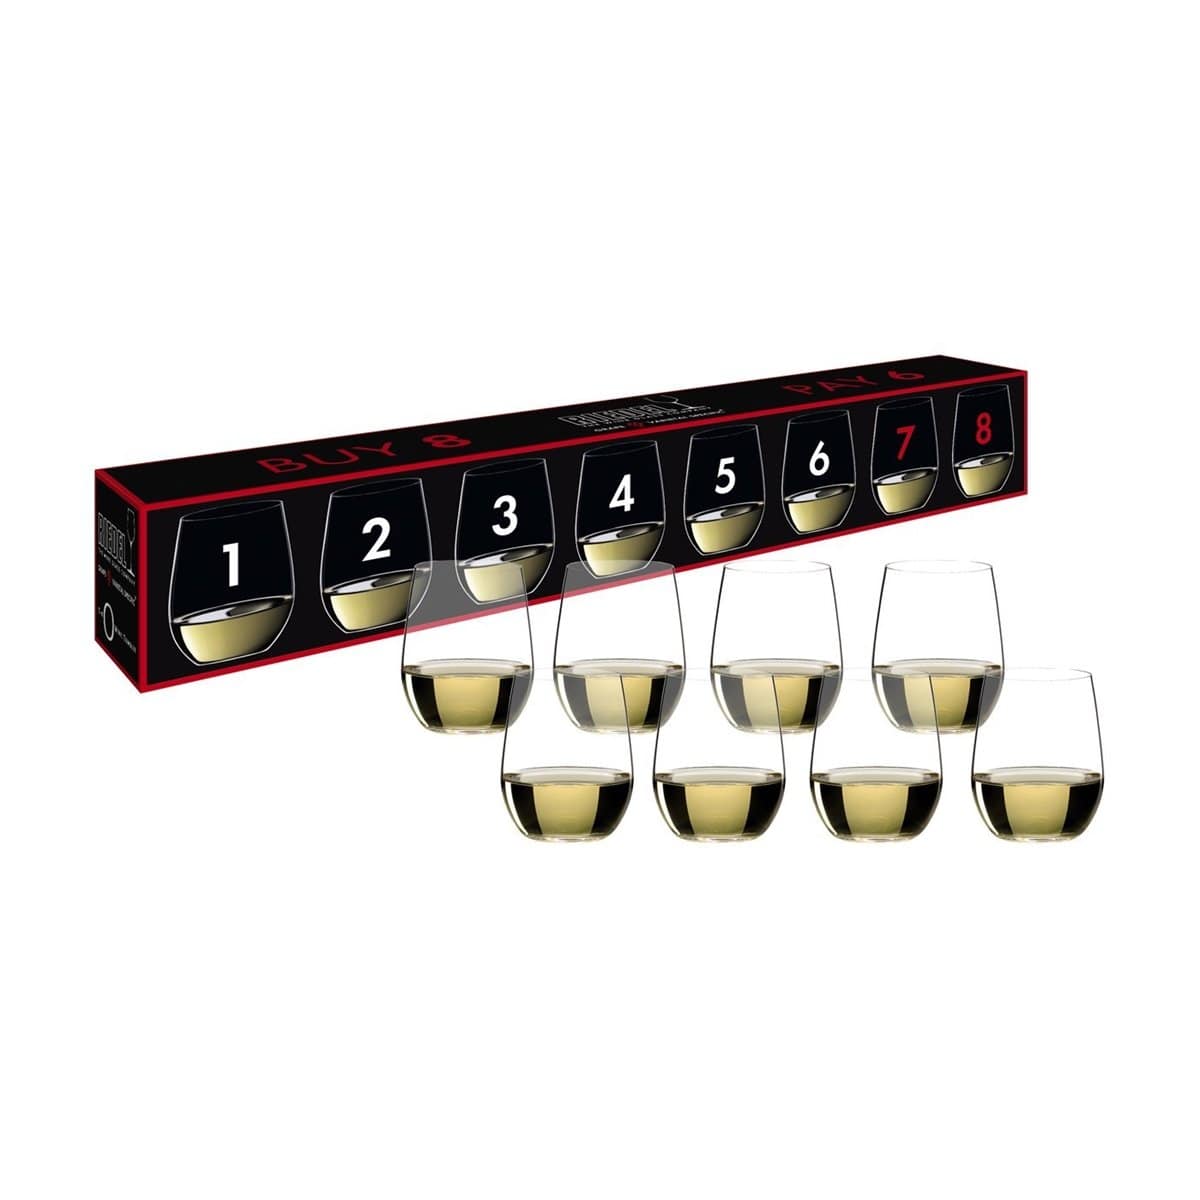 Riedel VINUM Viognier/Chardonnay Glasses] Review: [Our Take on Riedel VINUM  Viognier/Chardonnay Glasses]